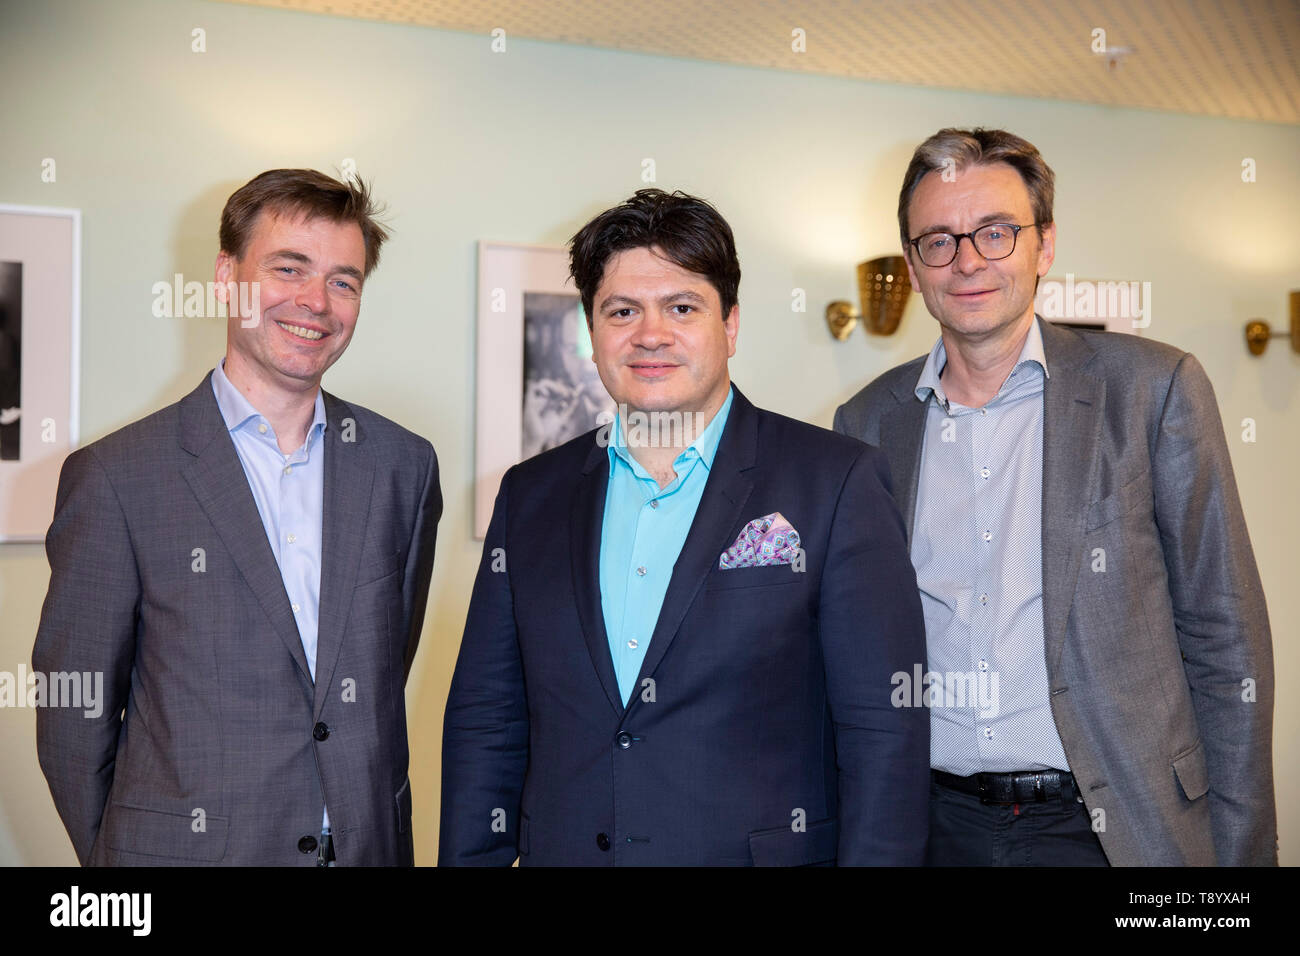 Siegwald Bütow, Cristian Măcelaru, Christoph Stahl beim Photocall im Funkhaus Wallrafplatz WDR-am. Köln, 14.05.2019 Banque D'Images